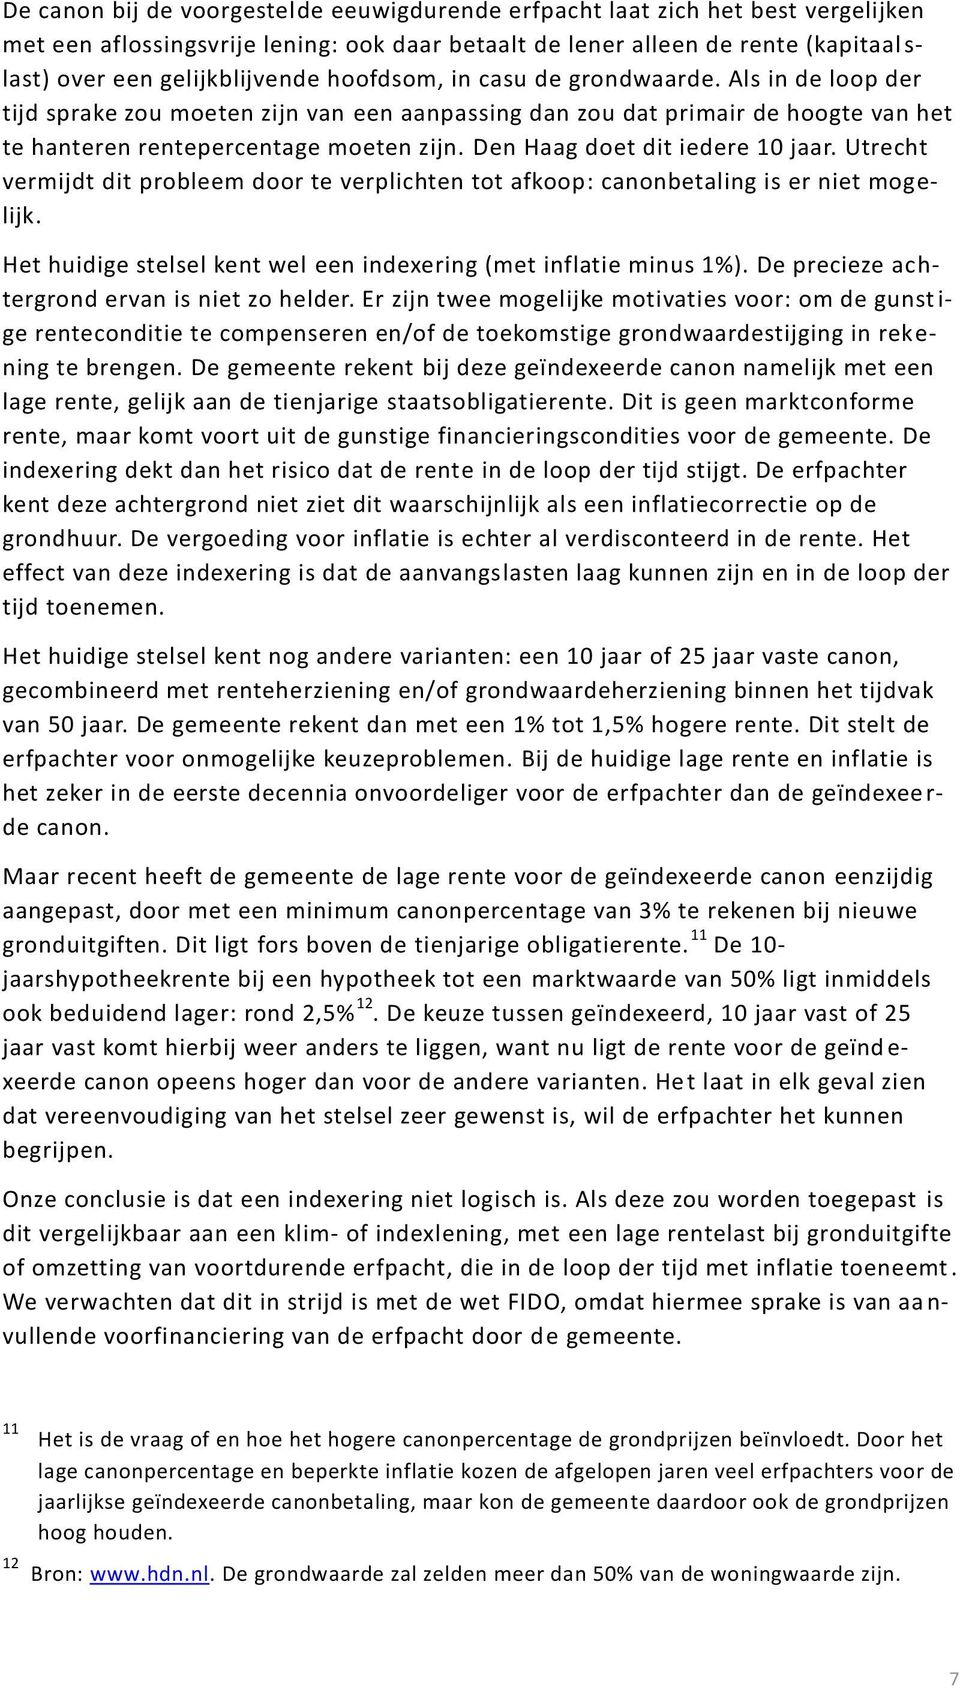 Den Haag doet dit iedere 10 jaar. Utrecht vermijdt dit probleem door te verplichten tot afkoop: canonbetaling is er niet mogelijk. Het huidige stelsel kent wel een indexering (met inflatie minus 1%).